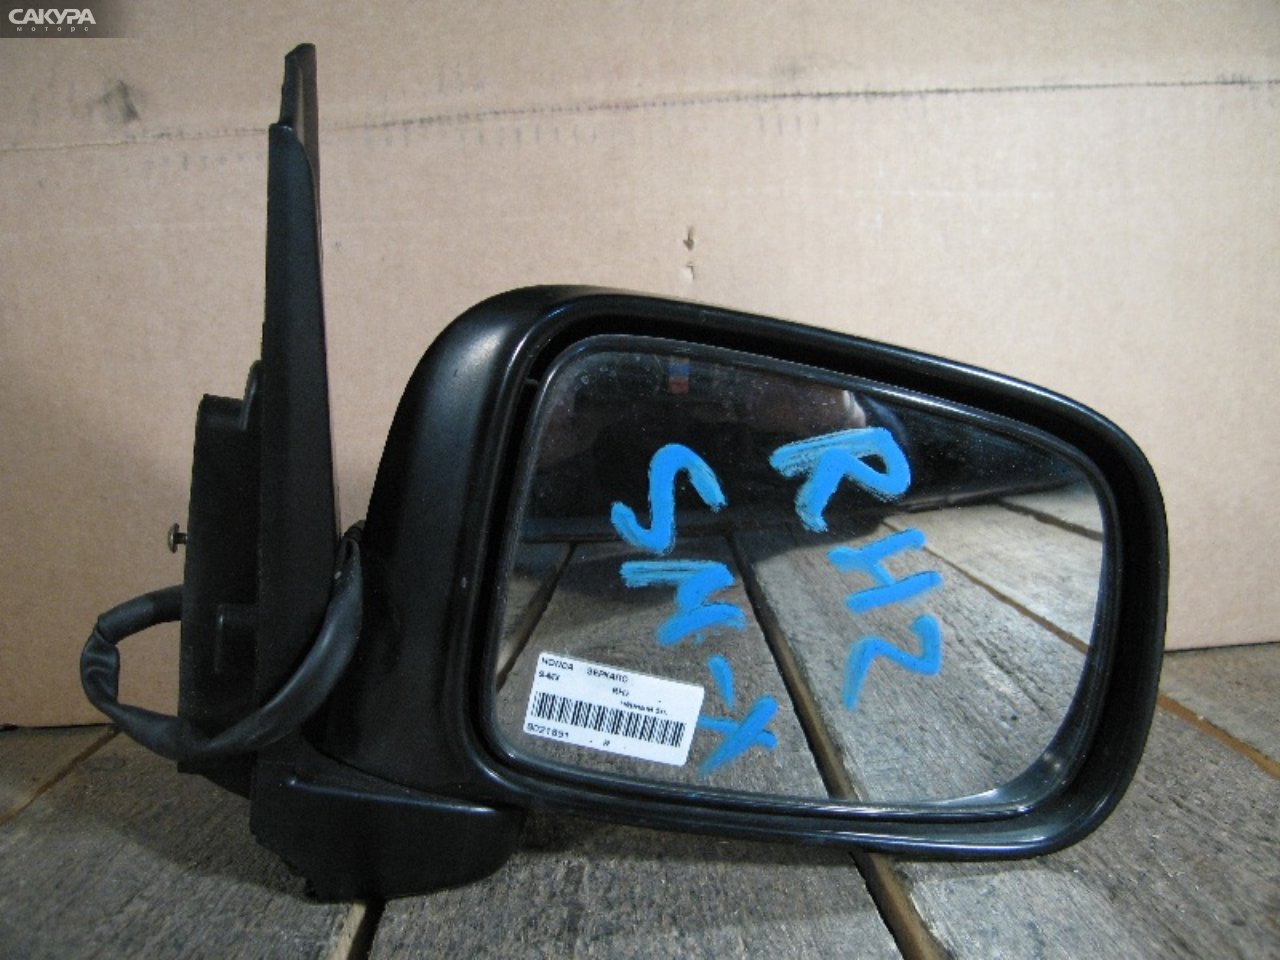 Зеркало боковое правое Honda S-MX RH2: купить в Сакура Абакан.